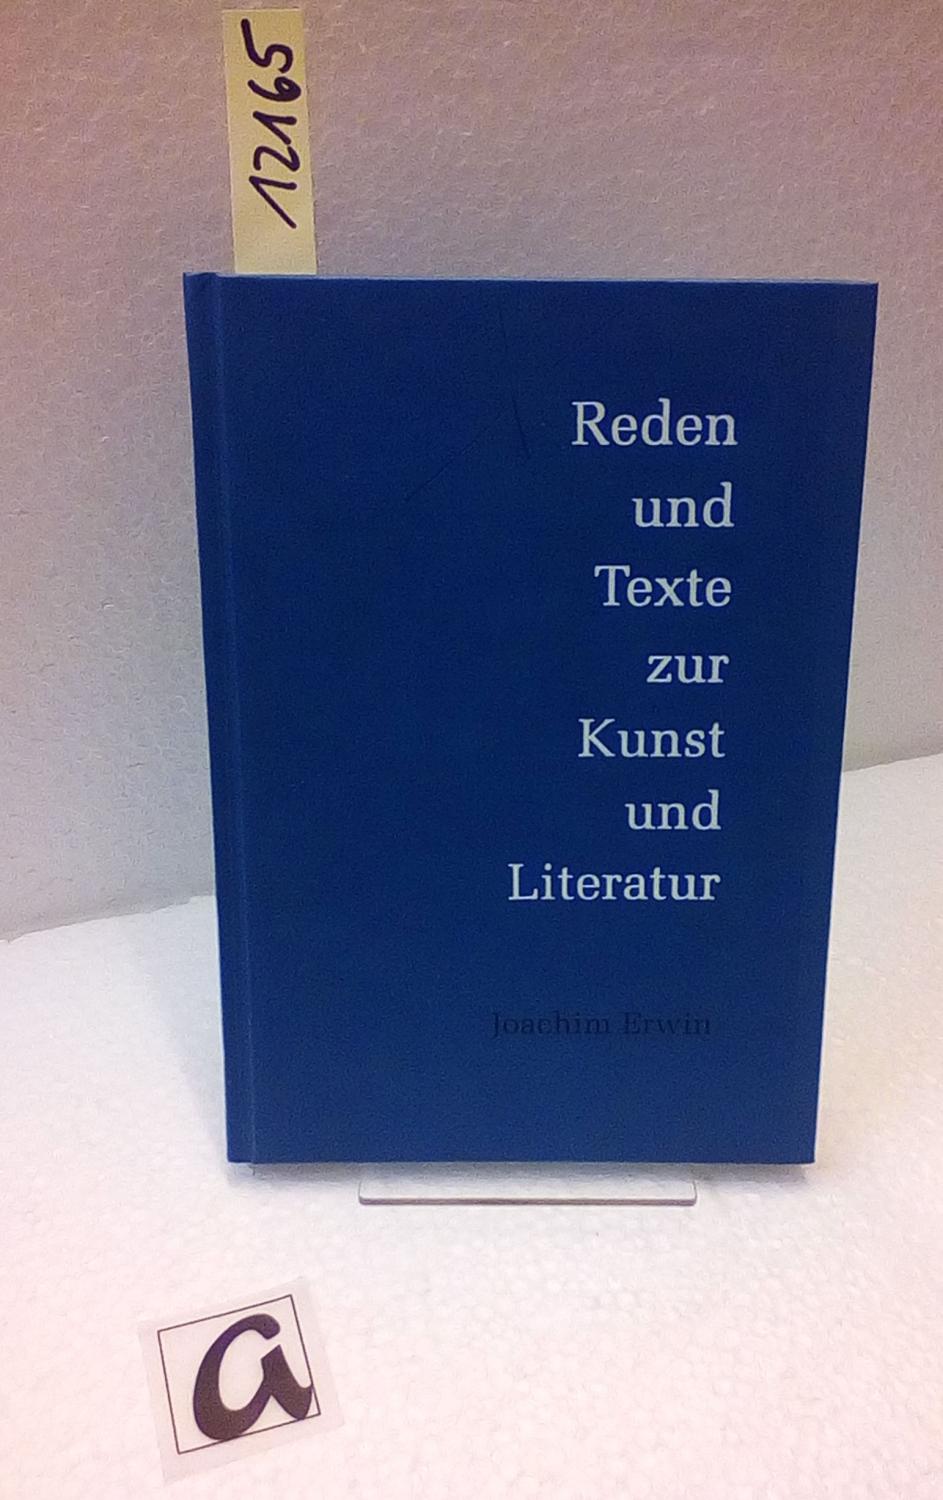 Reden und Texte zur Kunst und Literatur. - Erwin, Joachim Landeshauptstadt Düsseldorf (Hg)